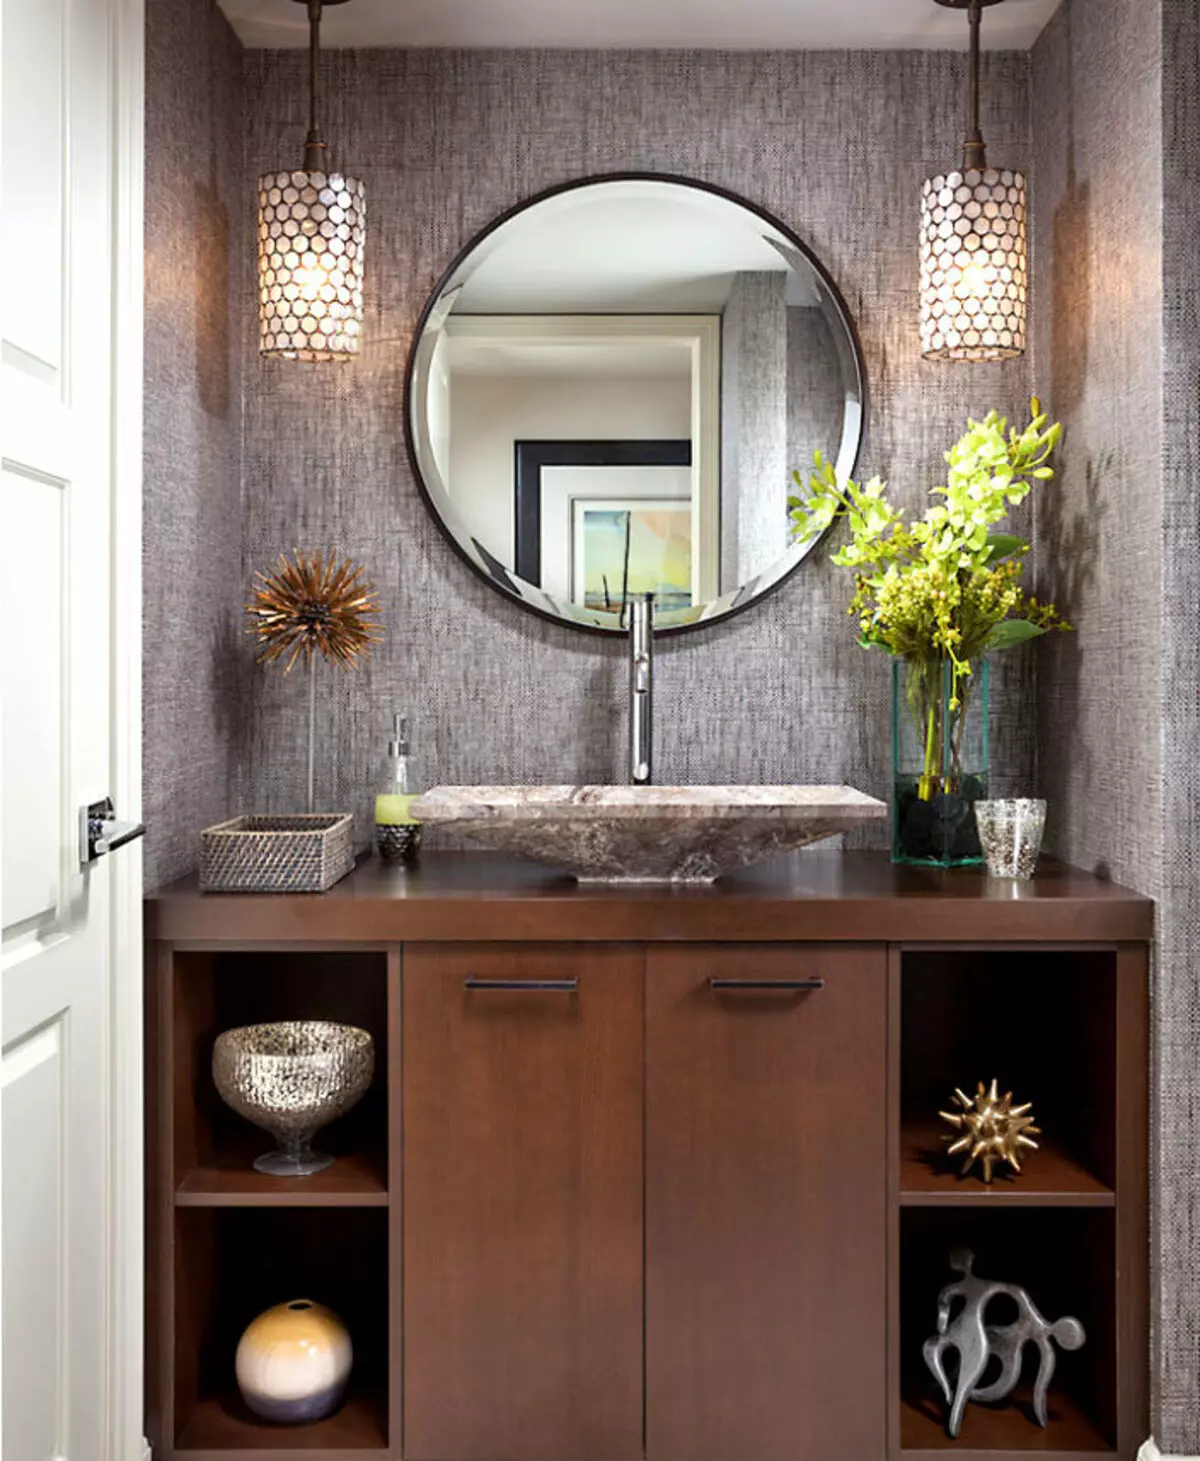 Miroir rond dans la salle de bain: miroirs design dans un cadre en bois, miroirs ronds de couleur noire et autre pour la salle de bain 10427_37